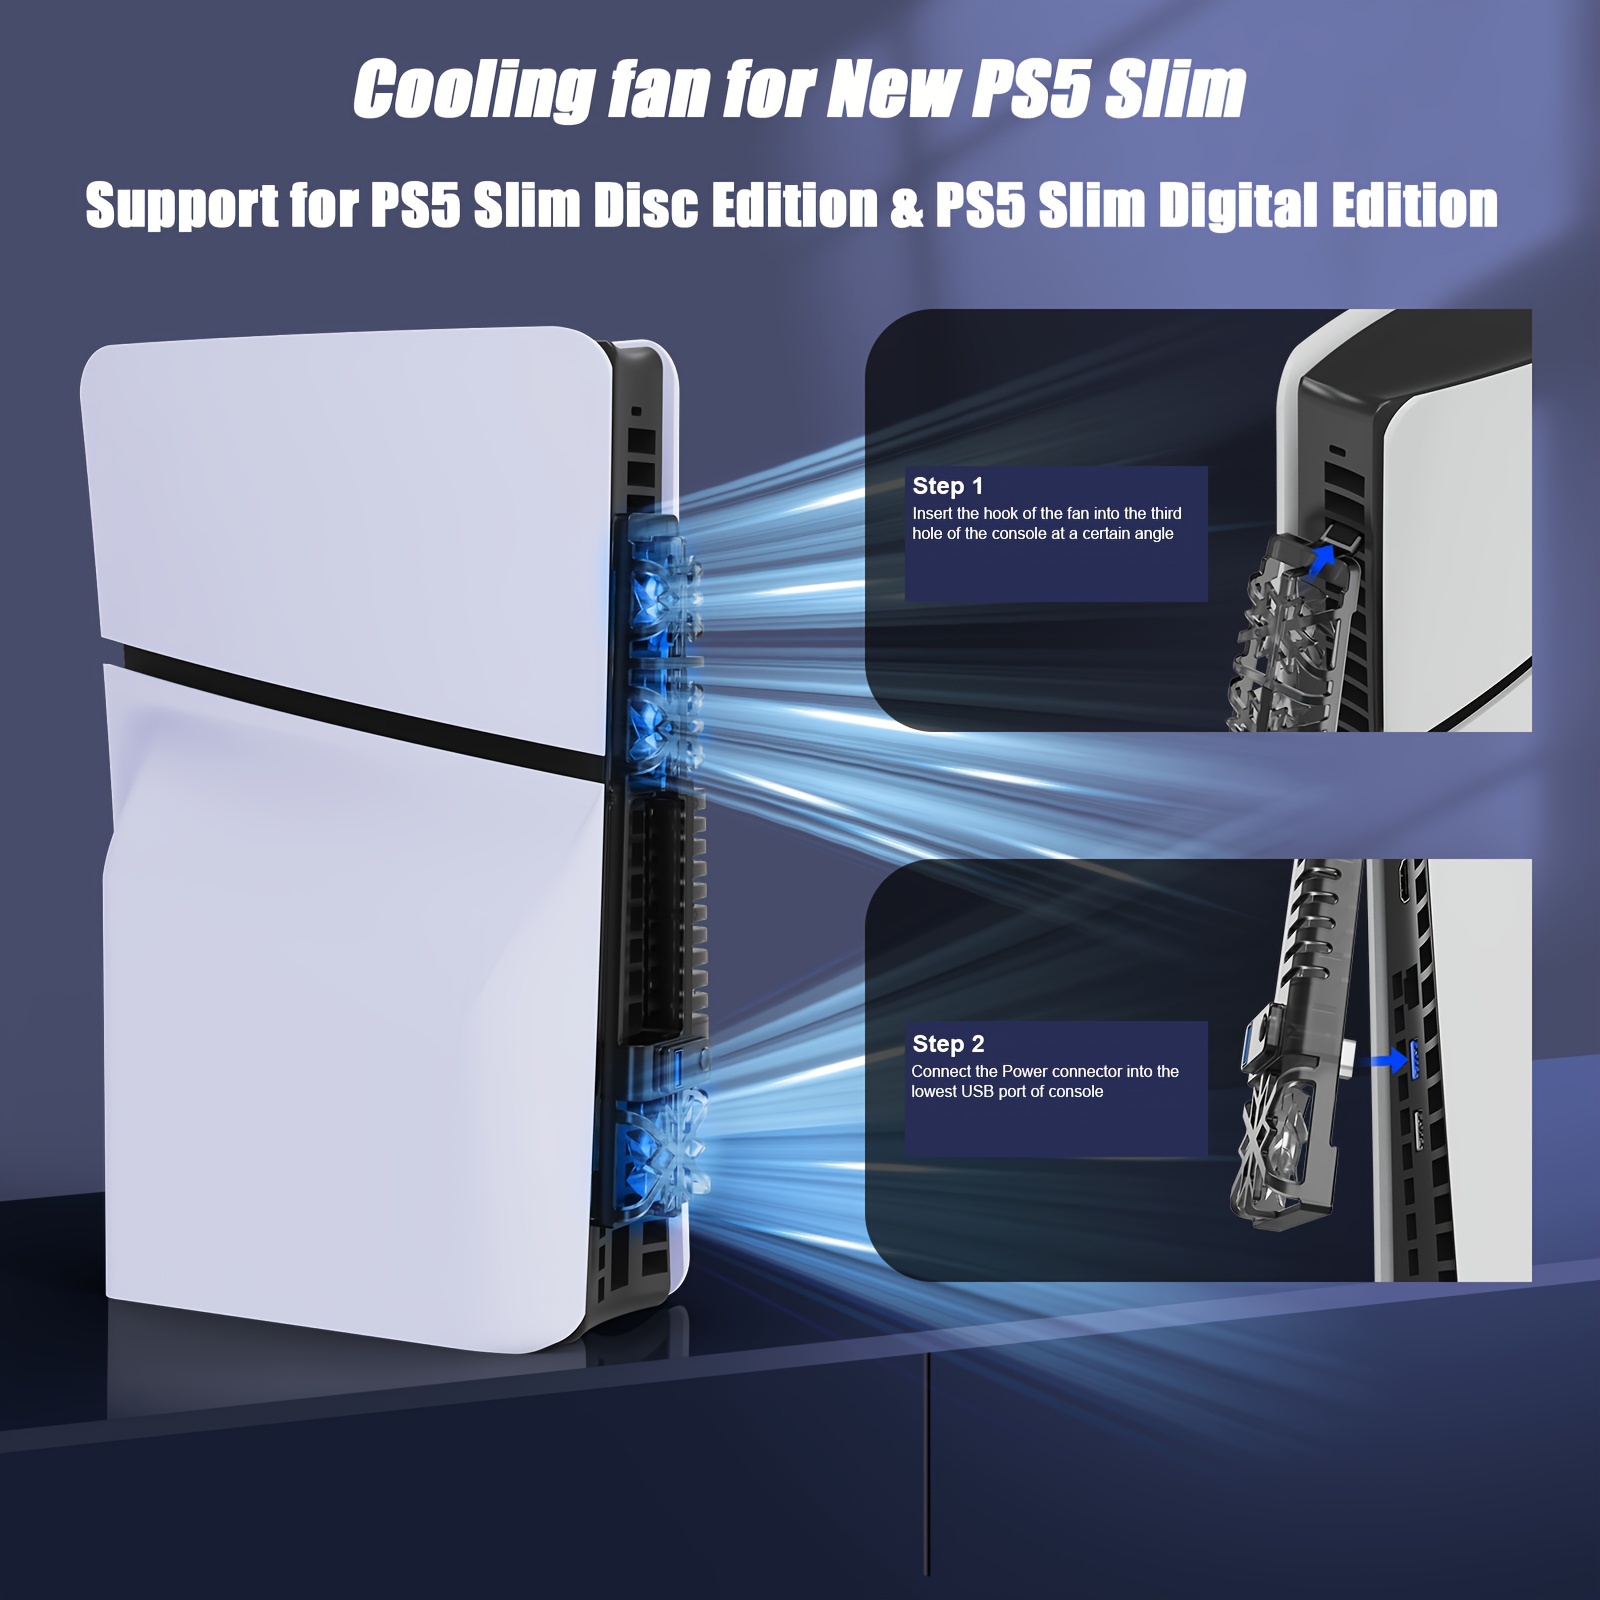 Para Nuevos Accesorios De PS5 Ventilador De Enfriamiento Con Luz LED Para  Ambas Ediciones De Disco Y Digital Para La Consola PS5 Slim Sistema De Enfri